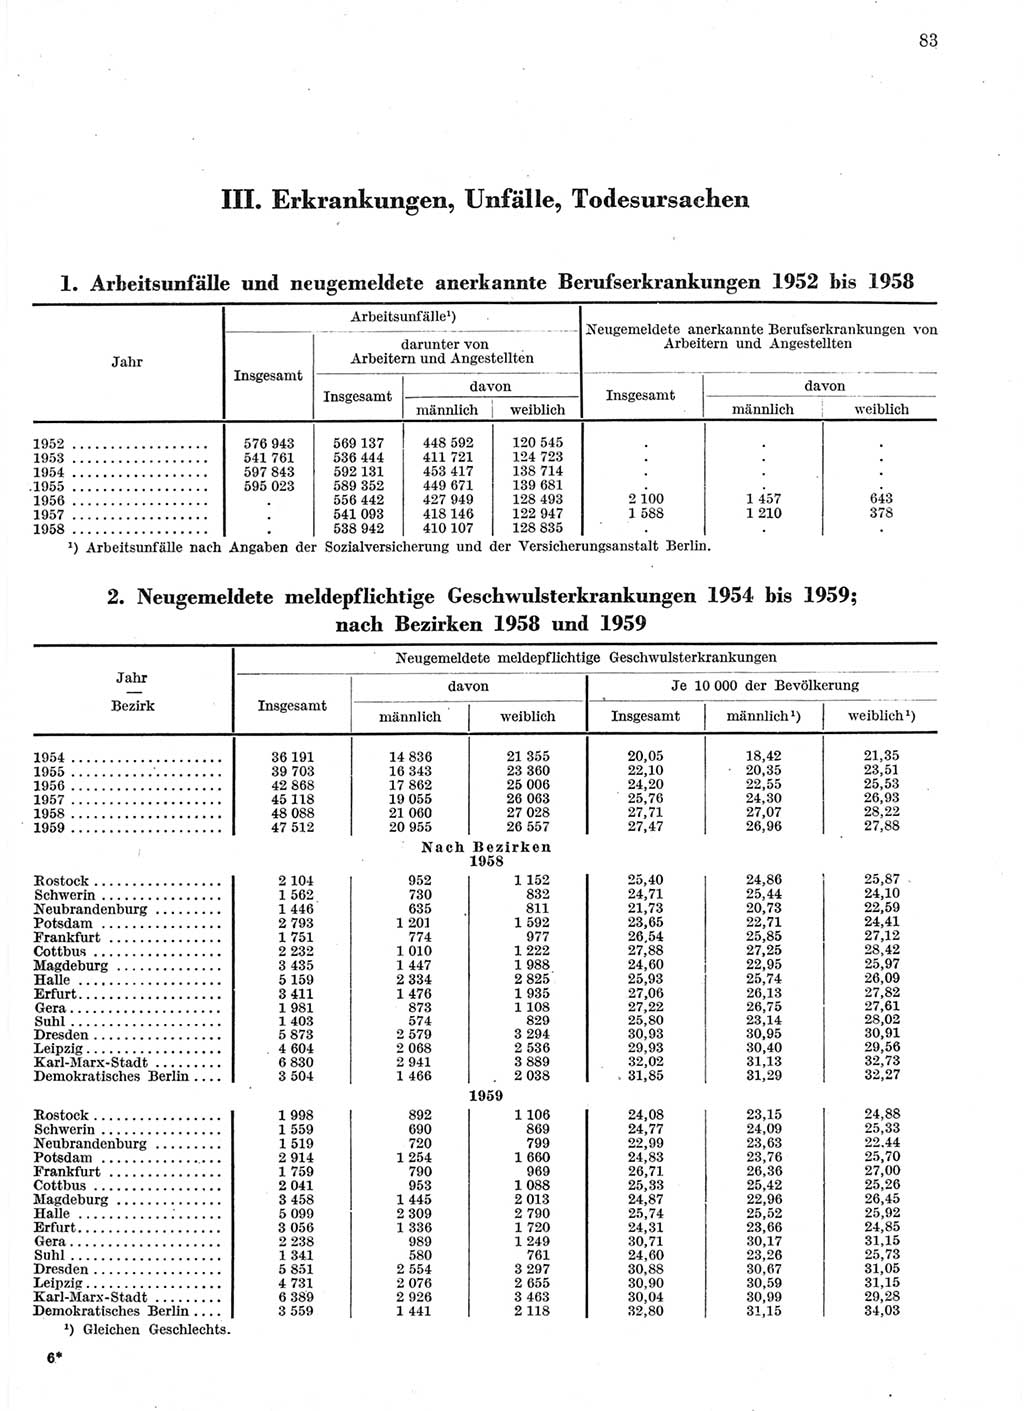 Statistisches Jahrbuch der Deutschen Demokratischen Republik (DDR) 1959, Seite 83 (Stat. Jb. DDR 1959, S. 83)